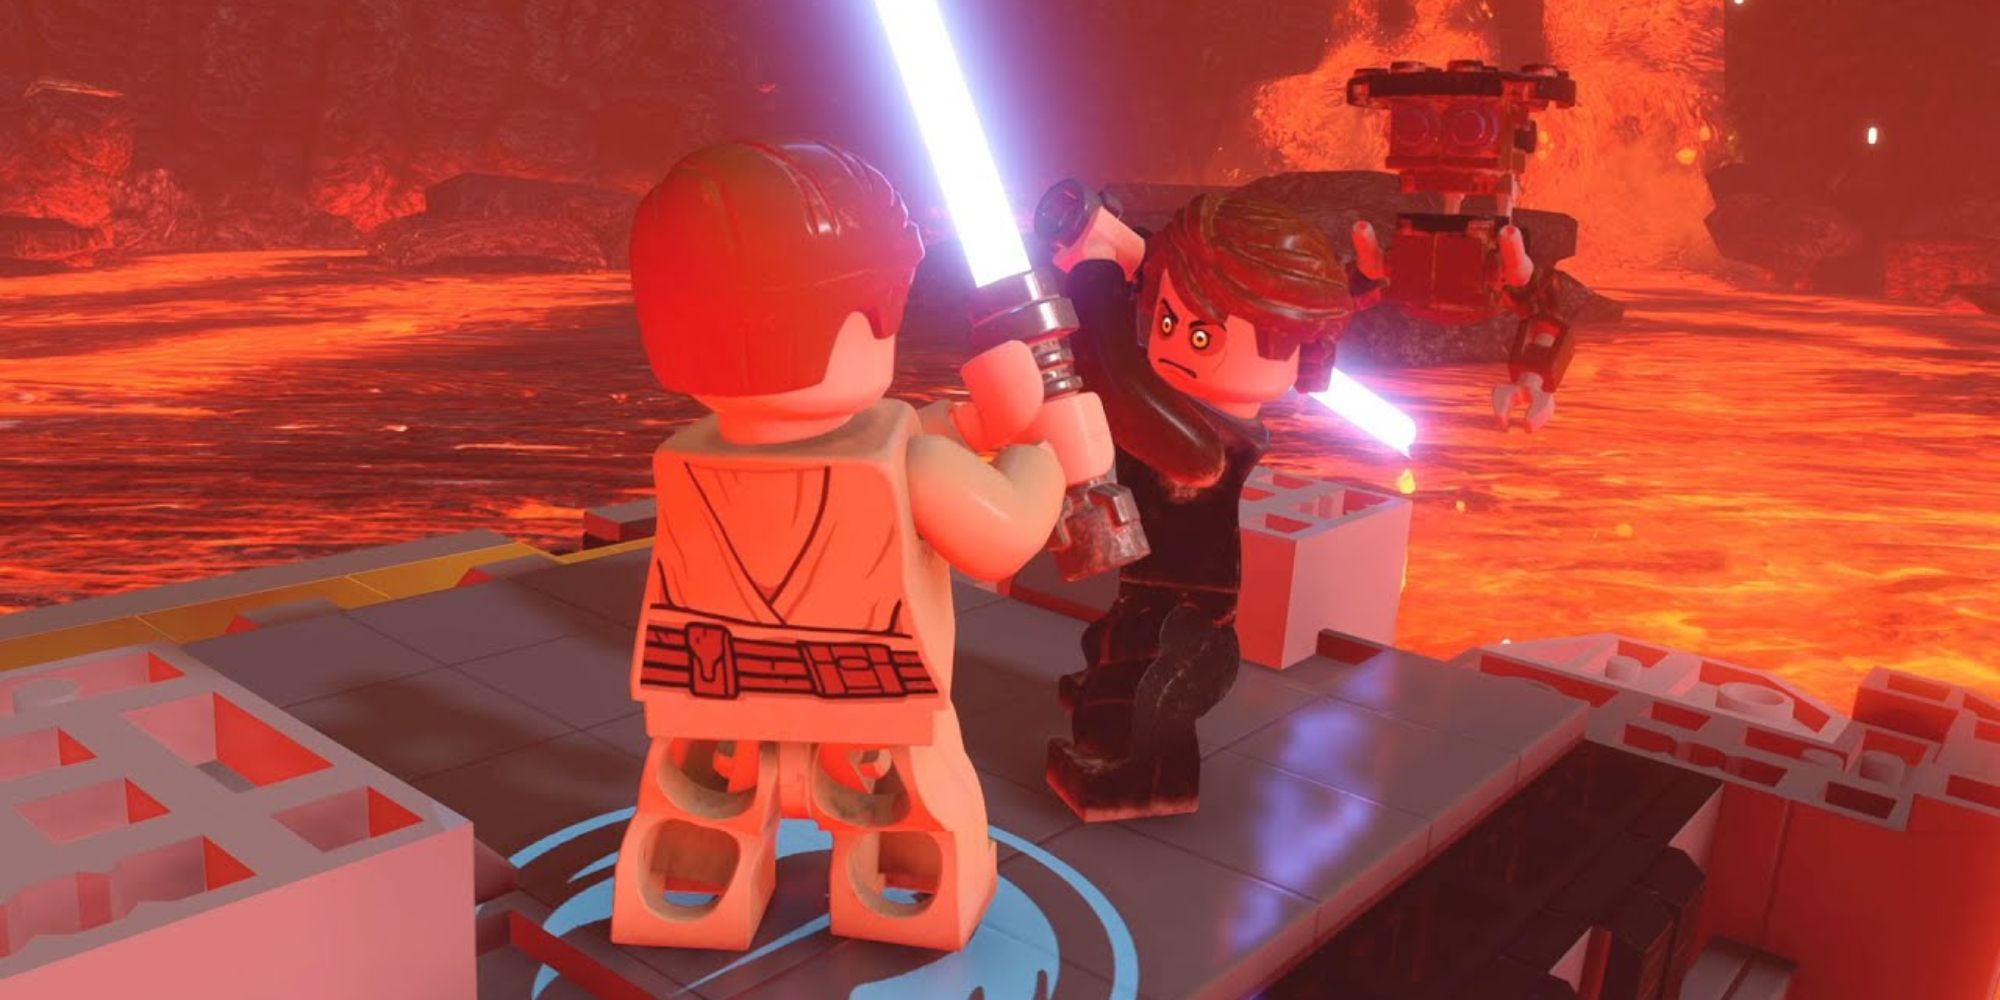 Lego Star Wars Skywalker Saga Screenshot Of Obi Wan Kenobi Vs Anakin